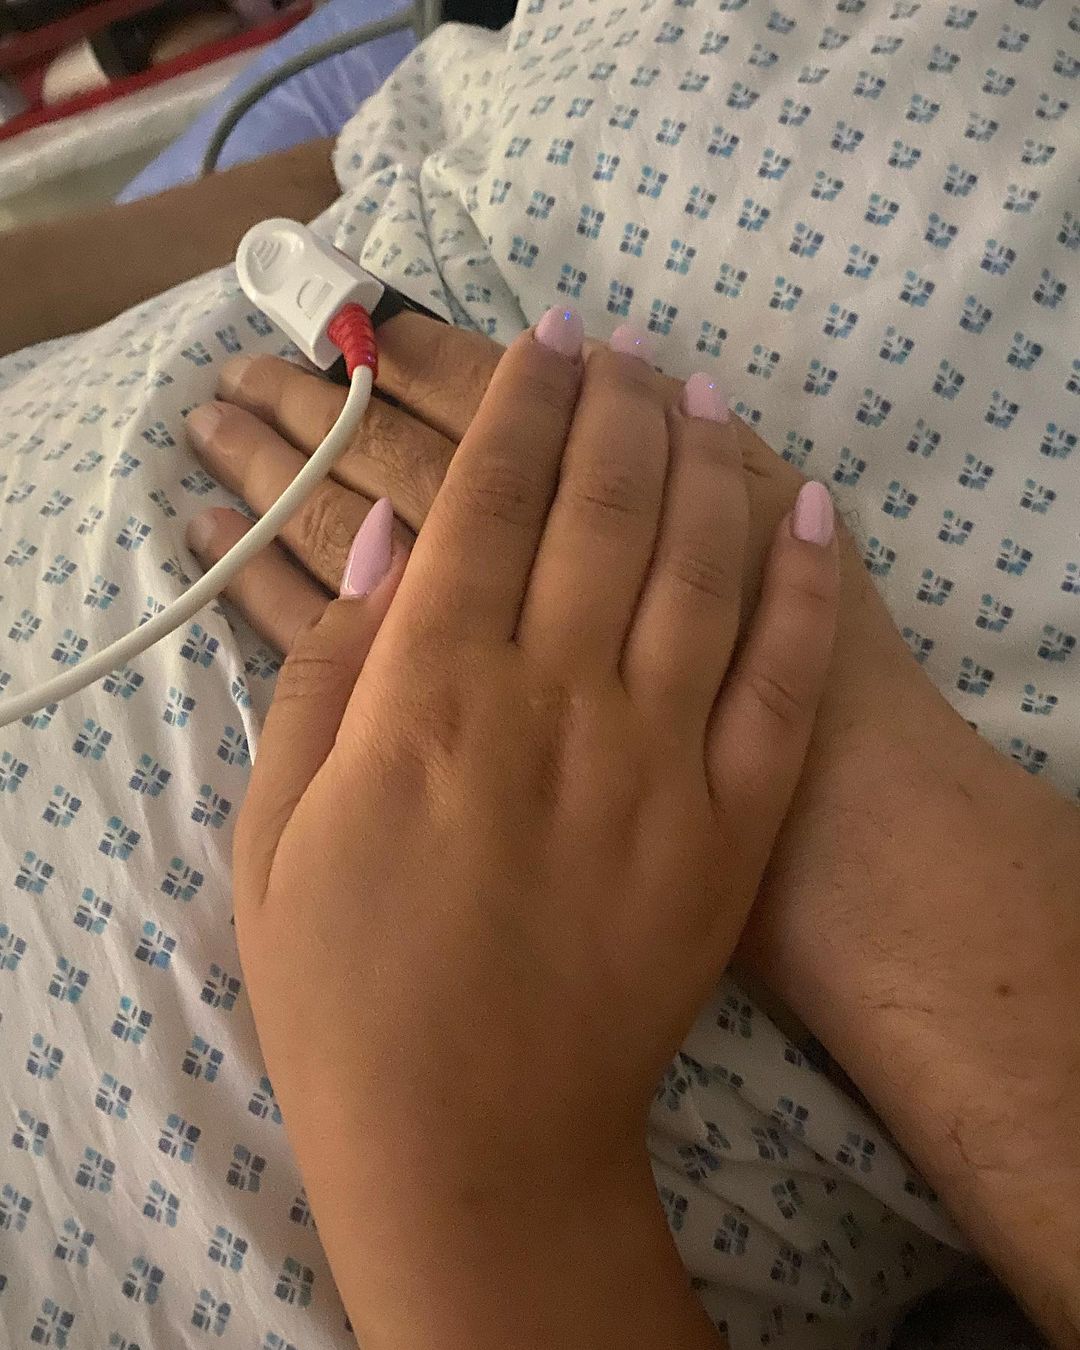 صورة نشرتها دنيا مع والدها صلاح عبد الله من المستشفى